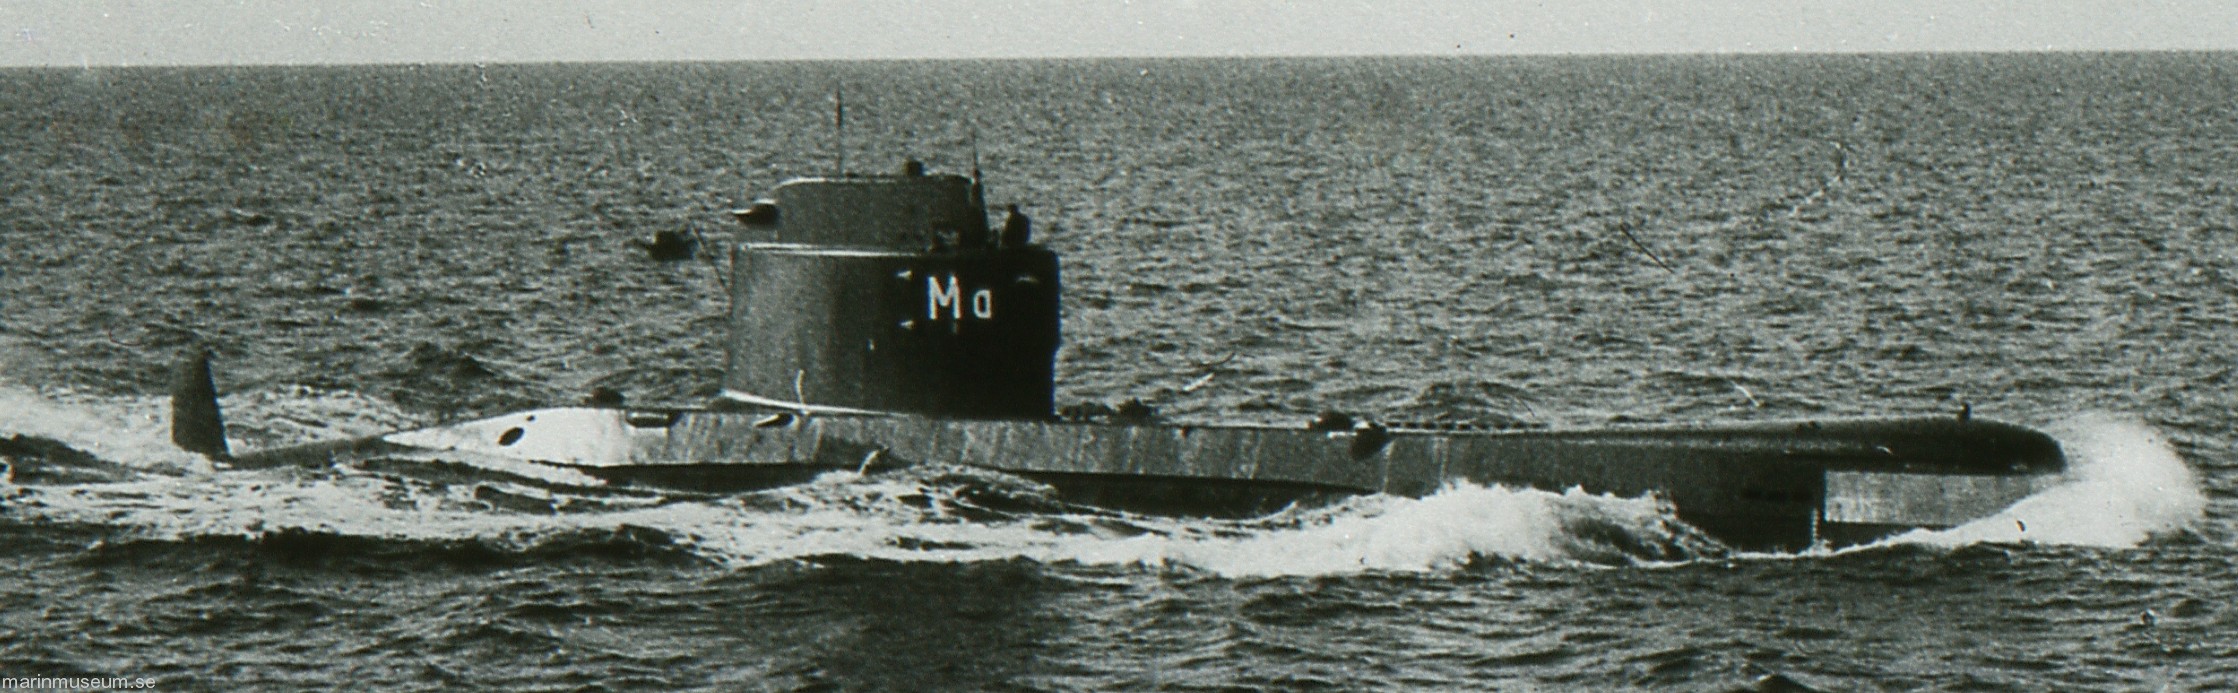 hms hswms makrillen aborren a13 class attack submarine ubåt swedish navy svenska marinen försvarsmakten 02